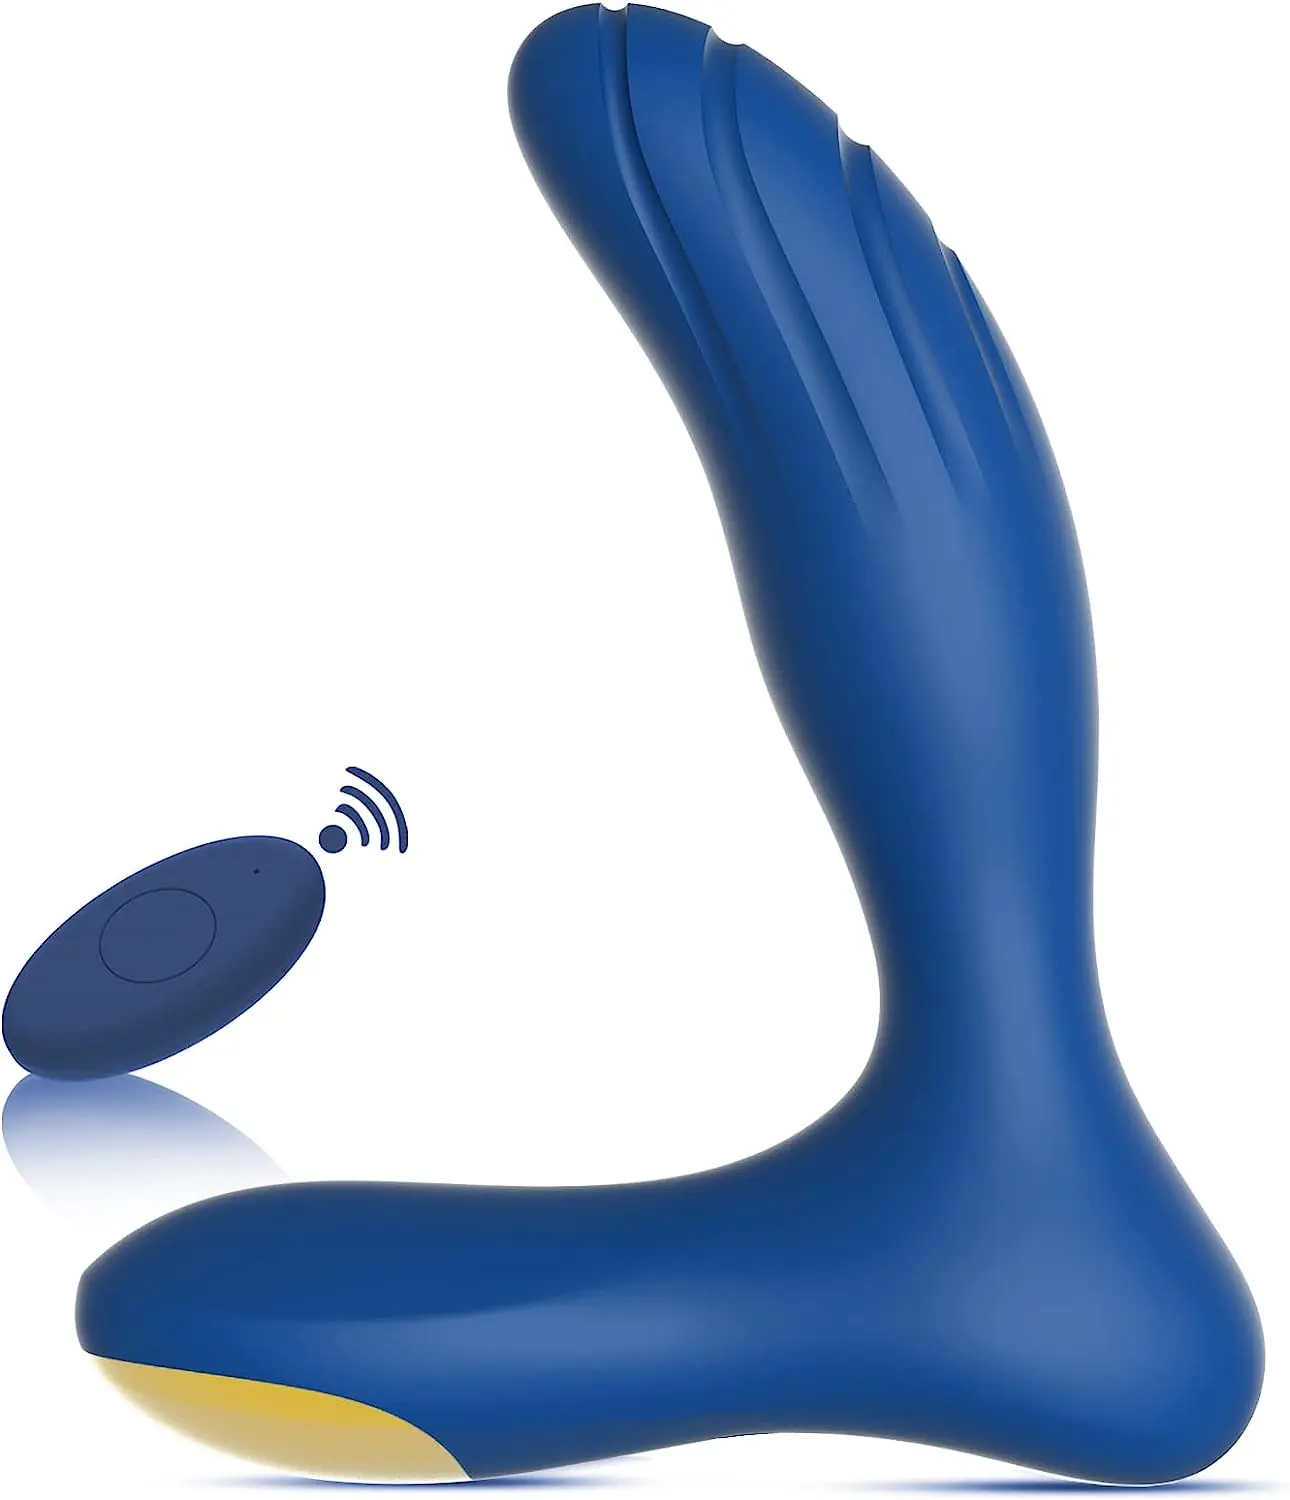 Yeni başlayanlar için 10 titreşim modları Anal Plug Anal seks oyuncakları P spor masaj erkek seks oyuncakları erkekler için